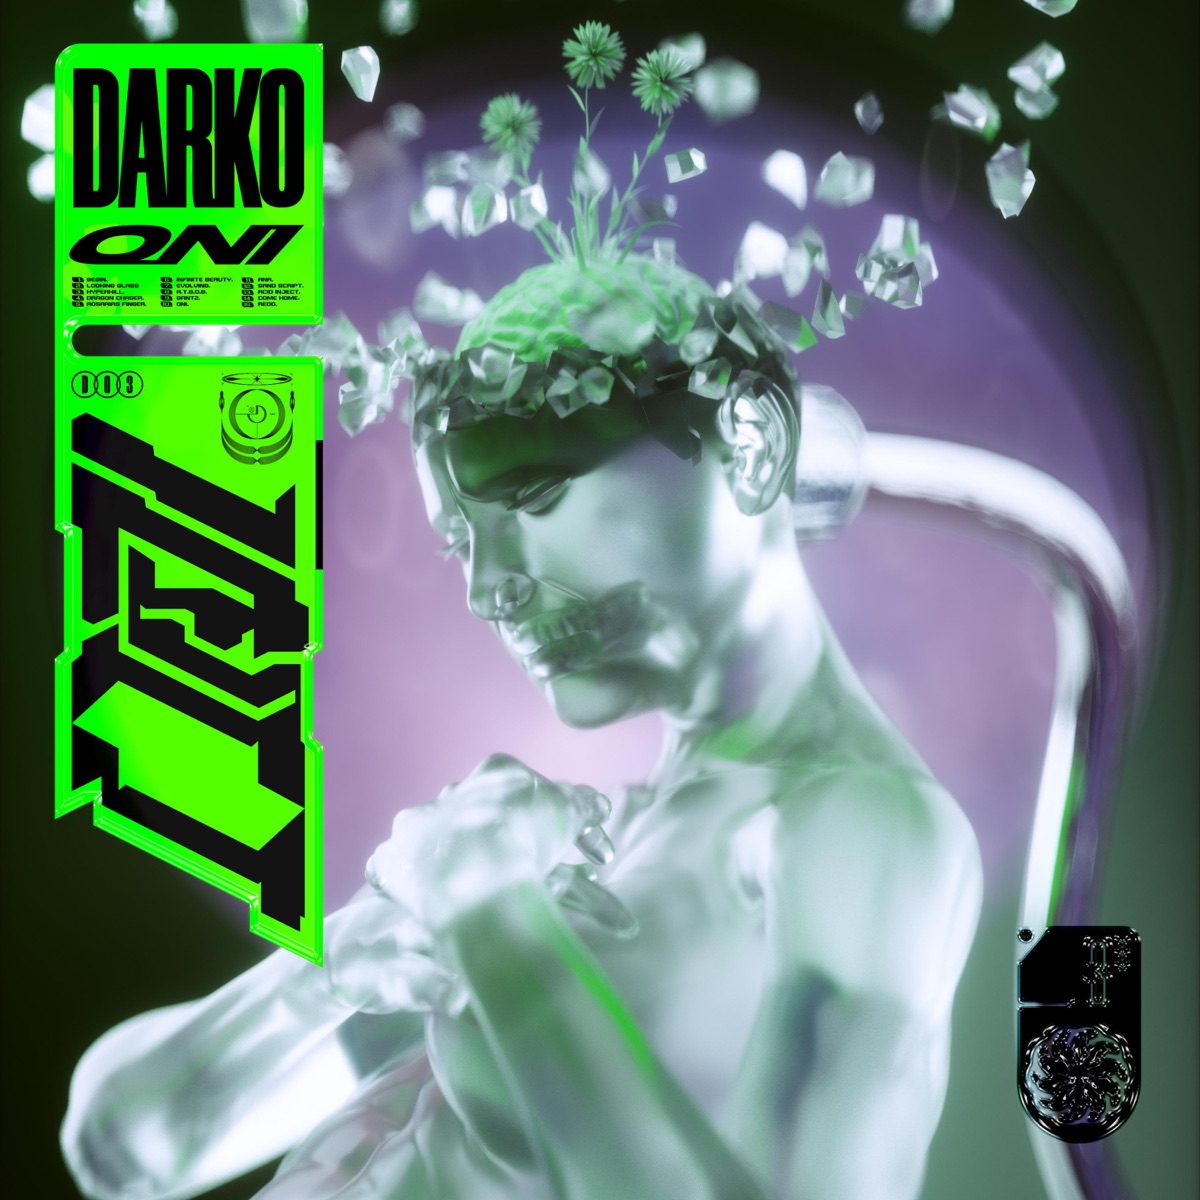 Darko - Album by Darko US - Apple Music